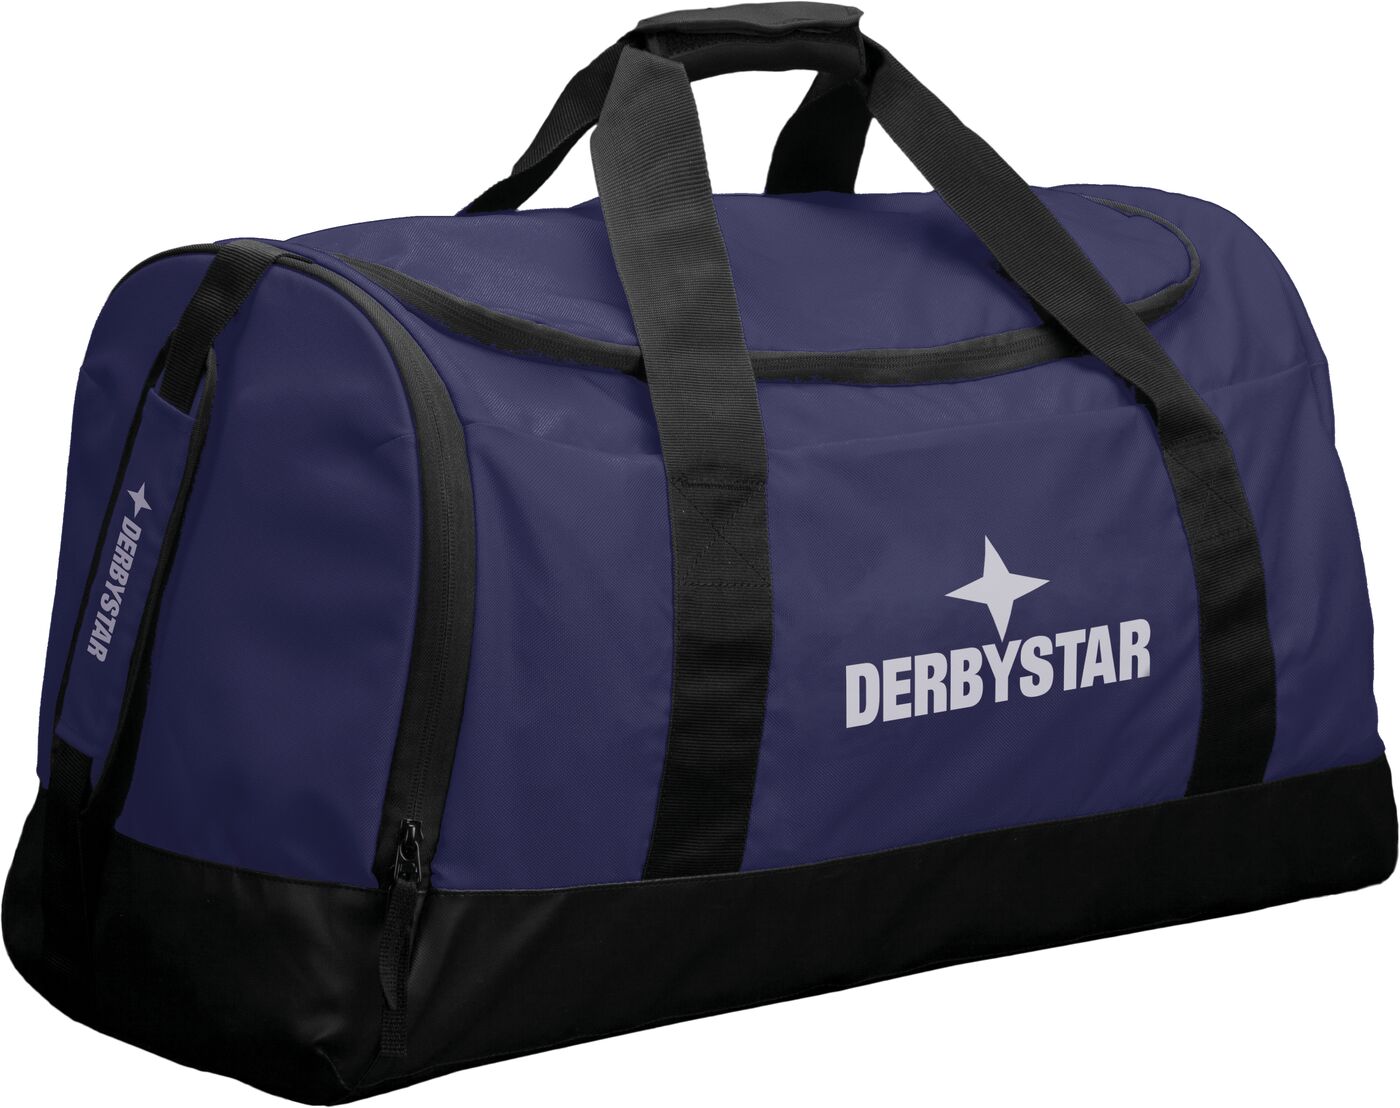 Derbystar Sporttasche Hyper, navy, M: 64 x 32 x 34 cm